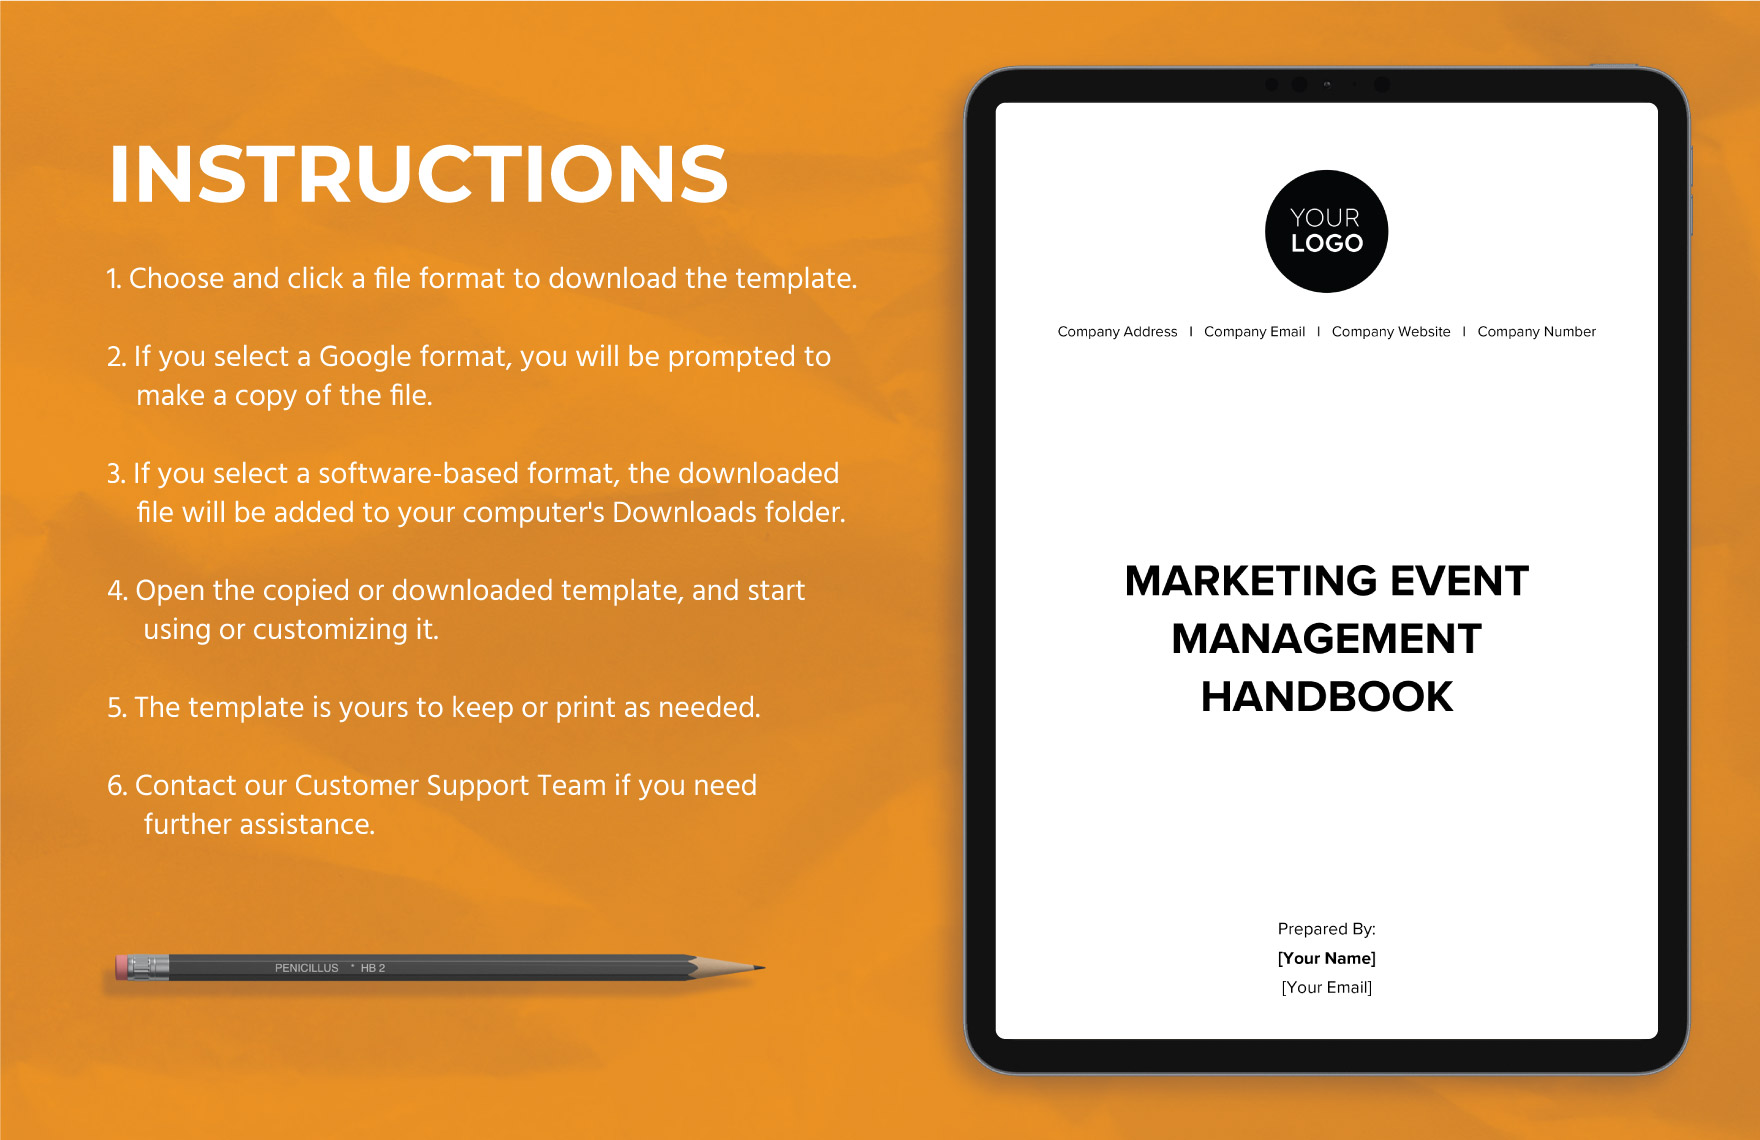 Marketing Event Management Handbook Template